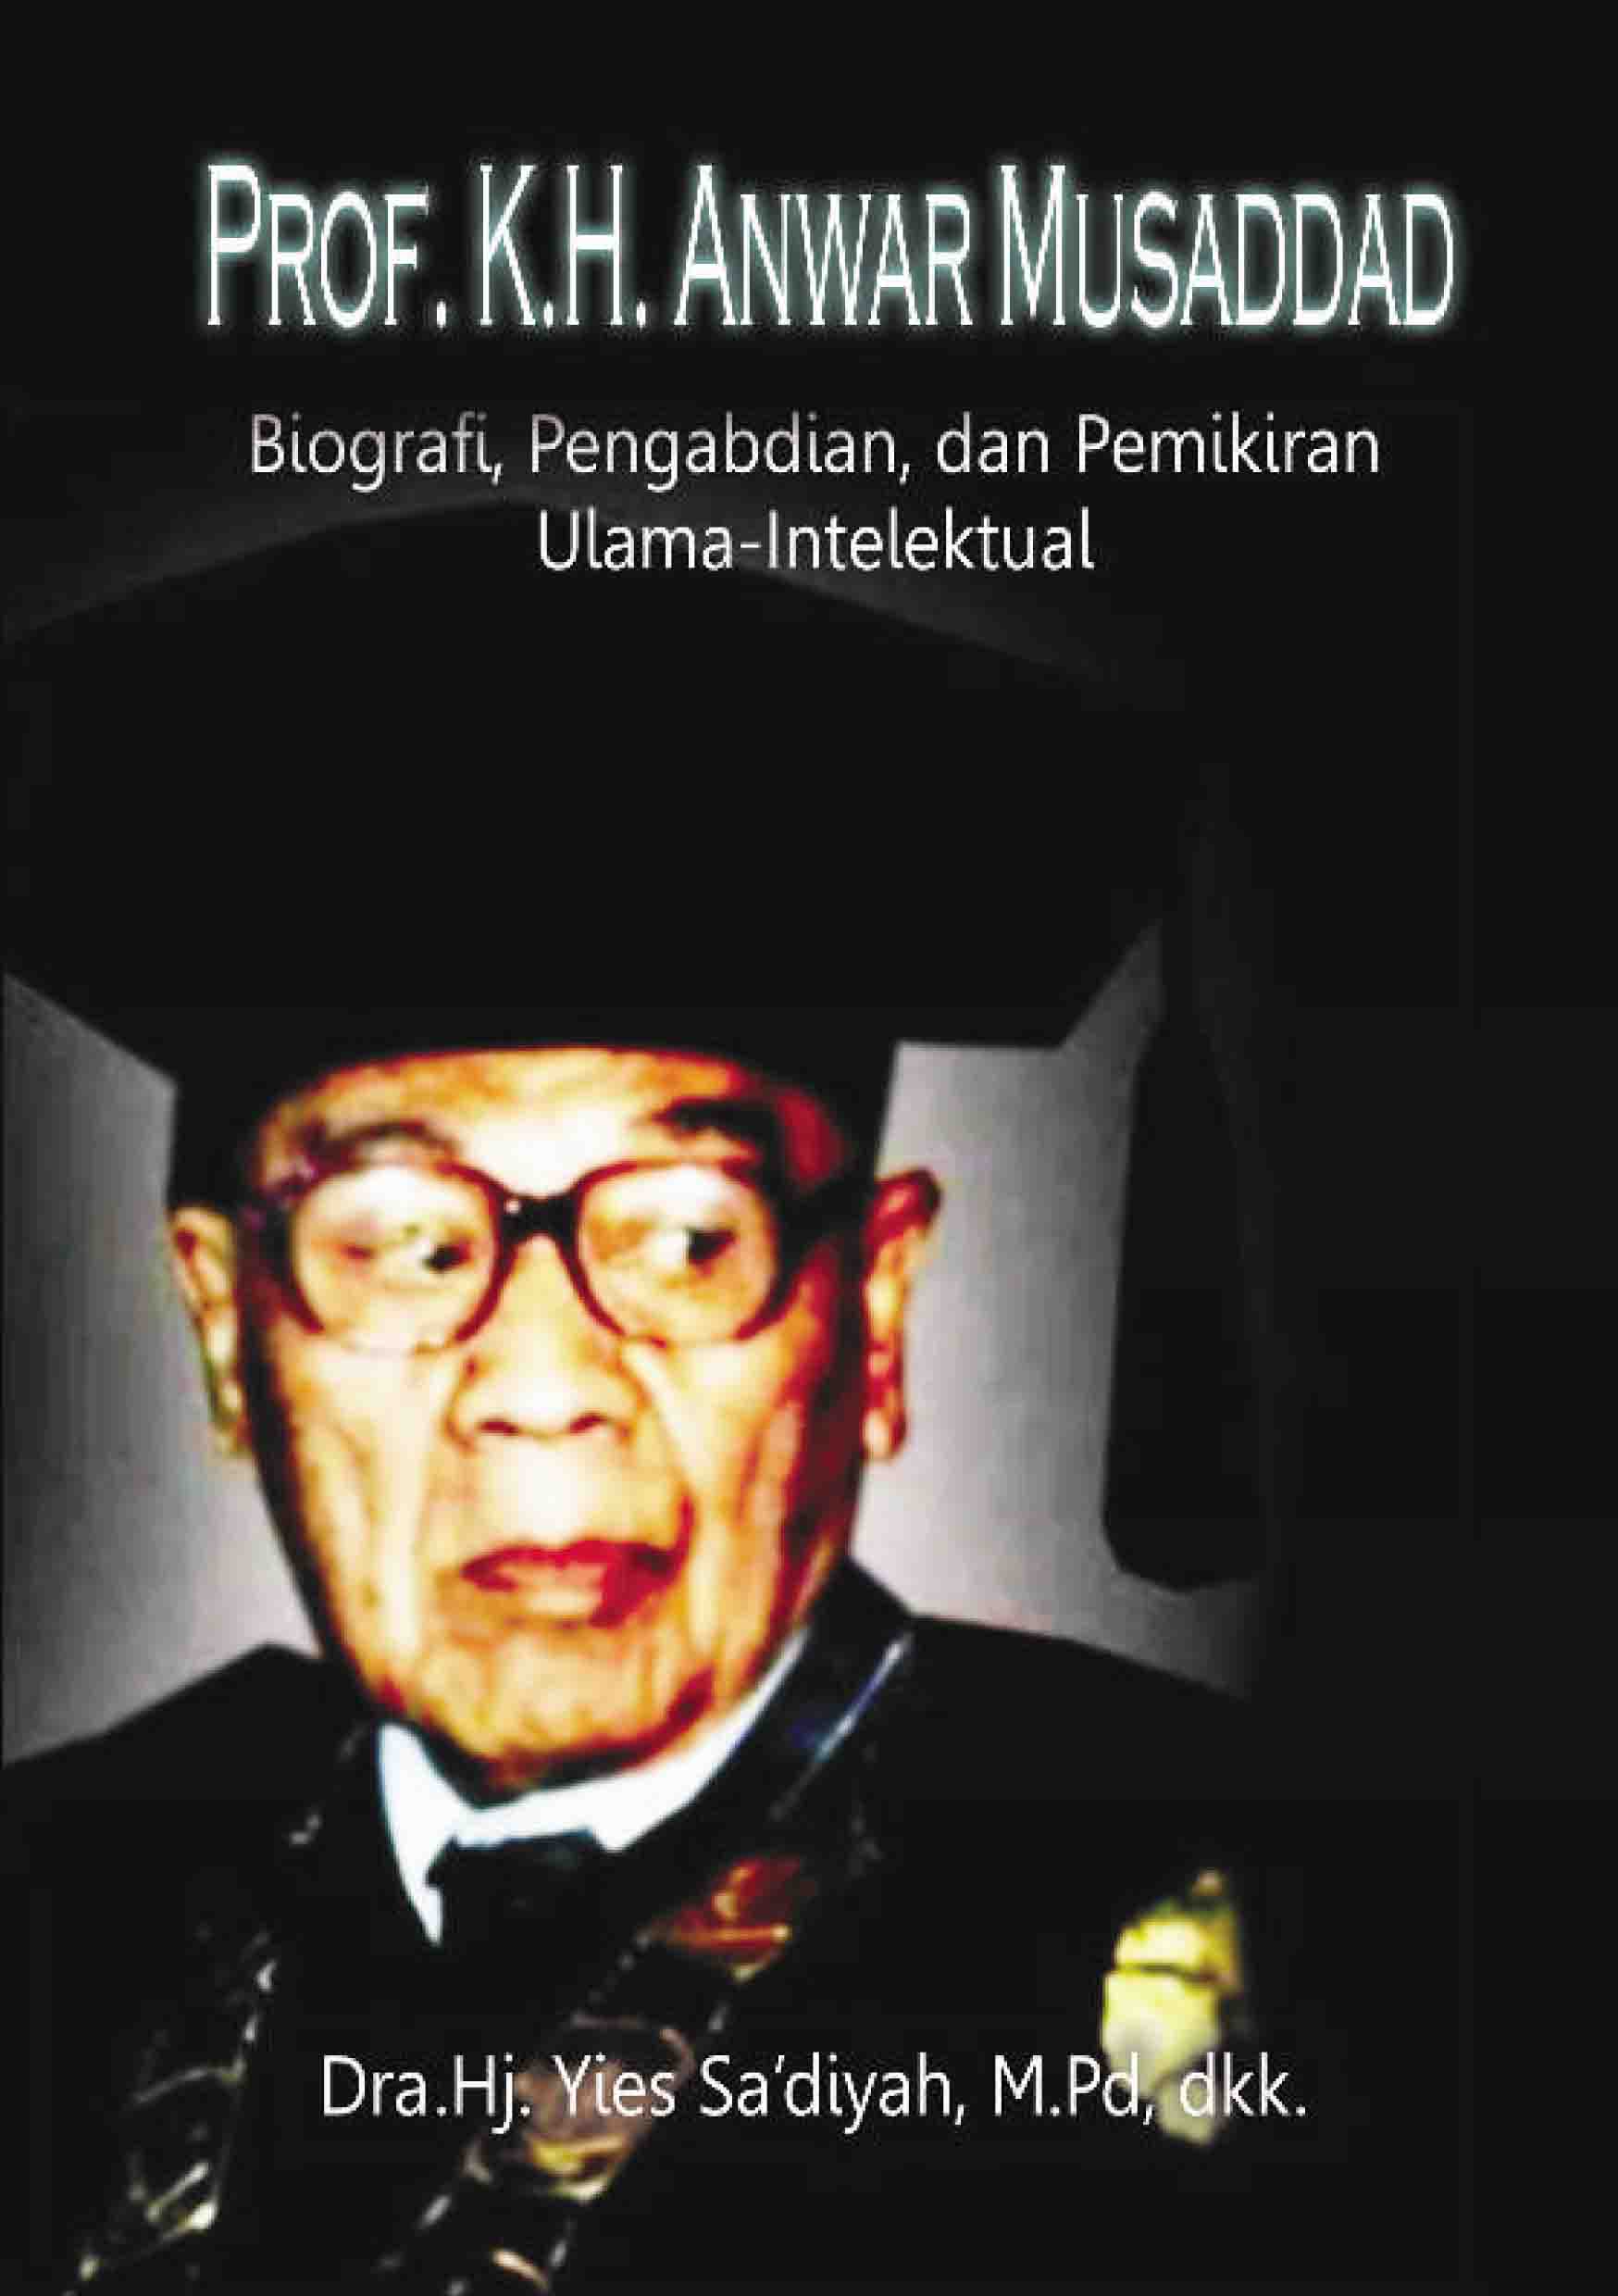 Biografi, Pengabdian, dan Pemikiran Ulama-Intelektual Prof. K.H. Anwar Musaddad 